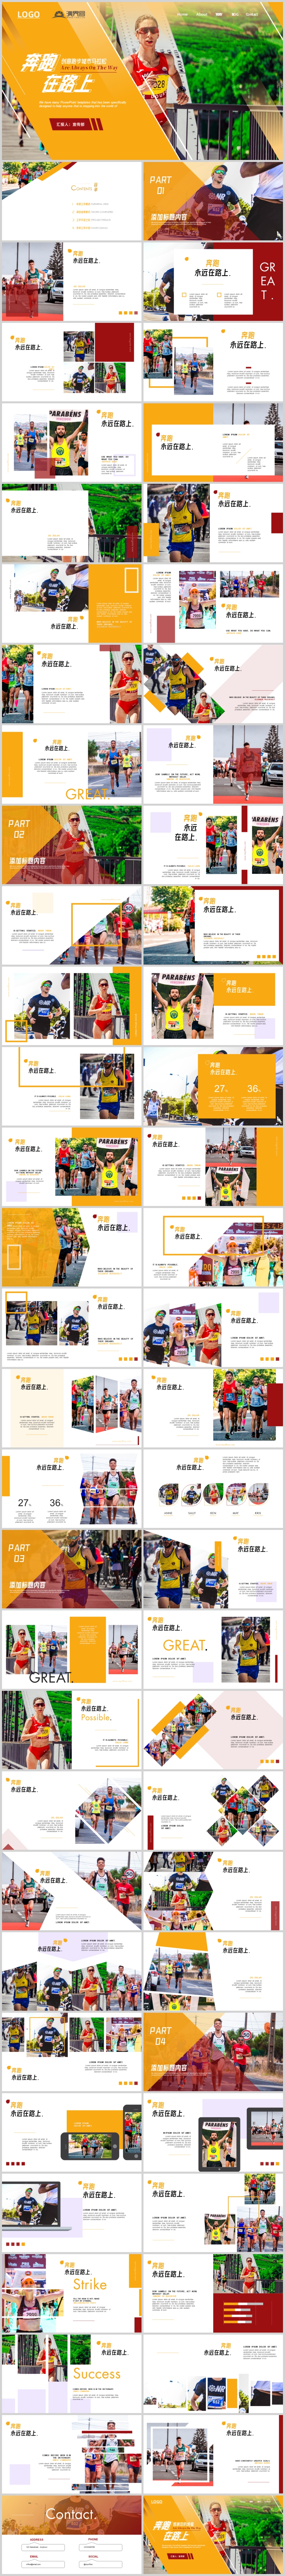 创意跑步运动城市马拉松比赛宣传画册ppt模板